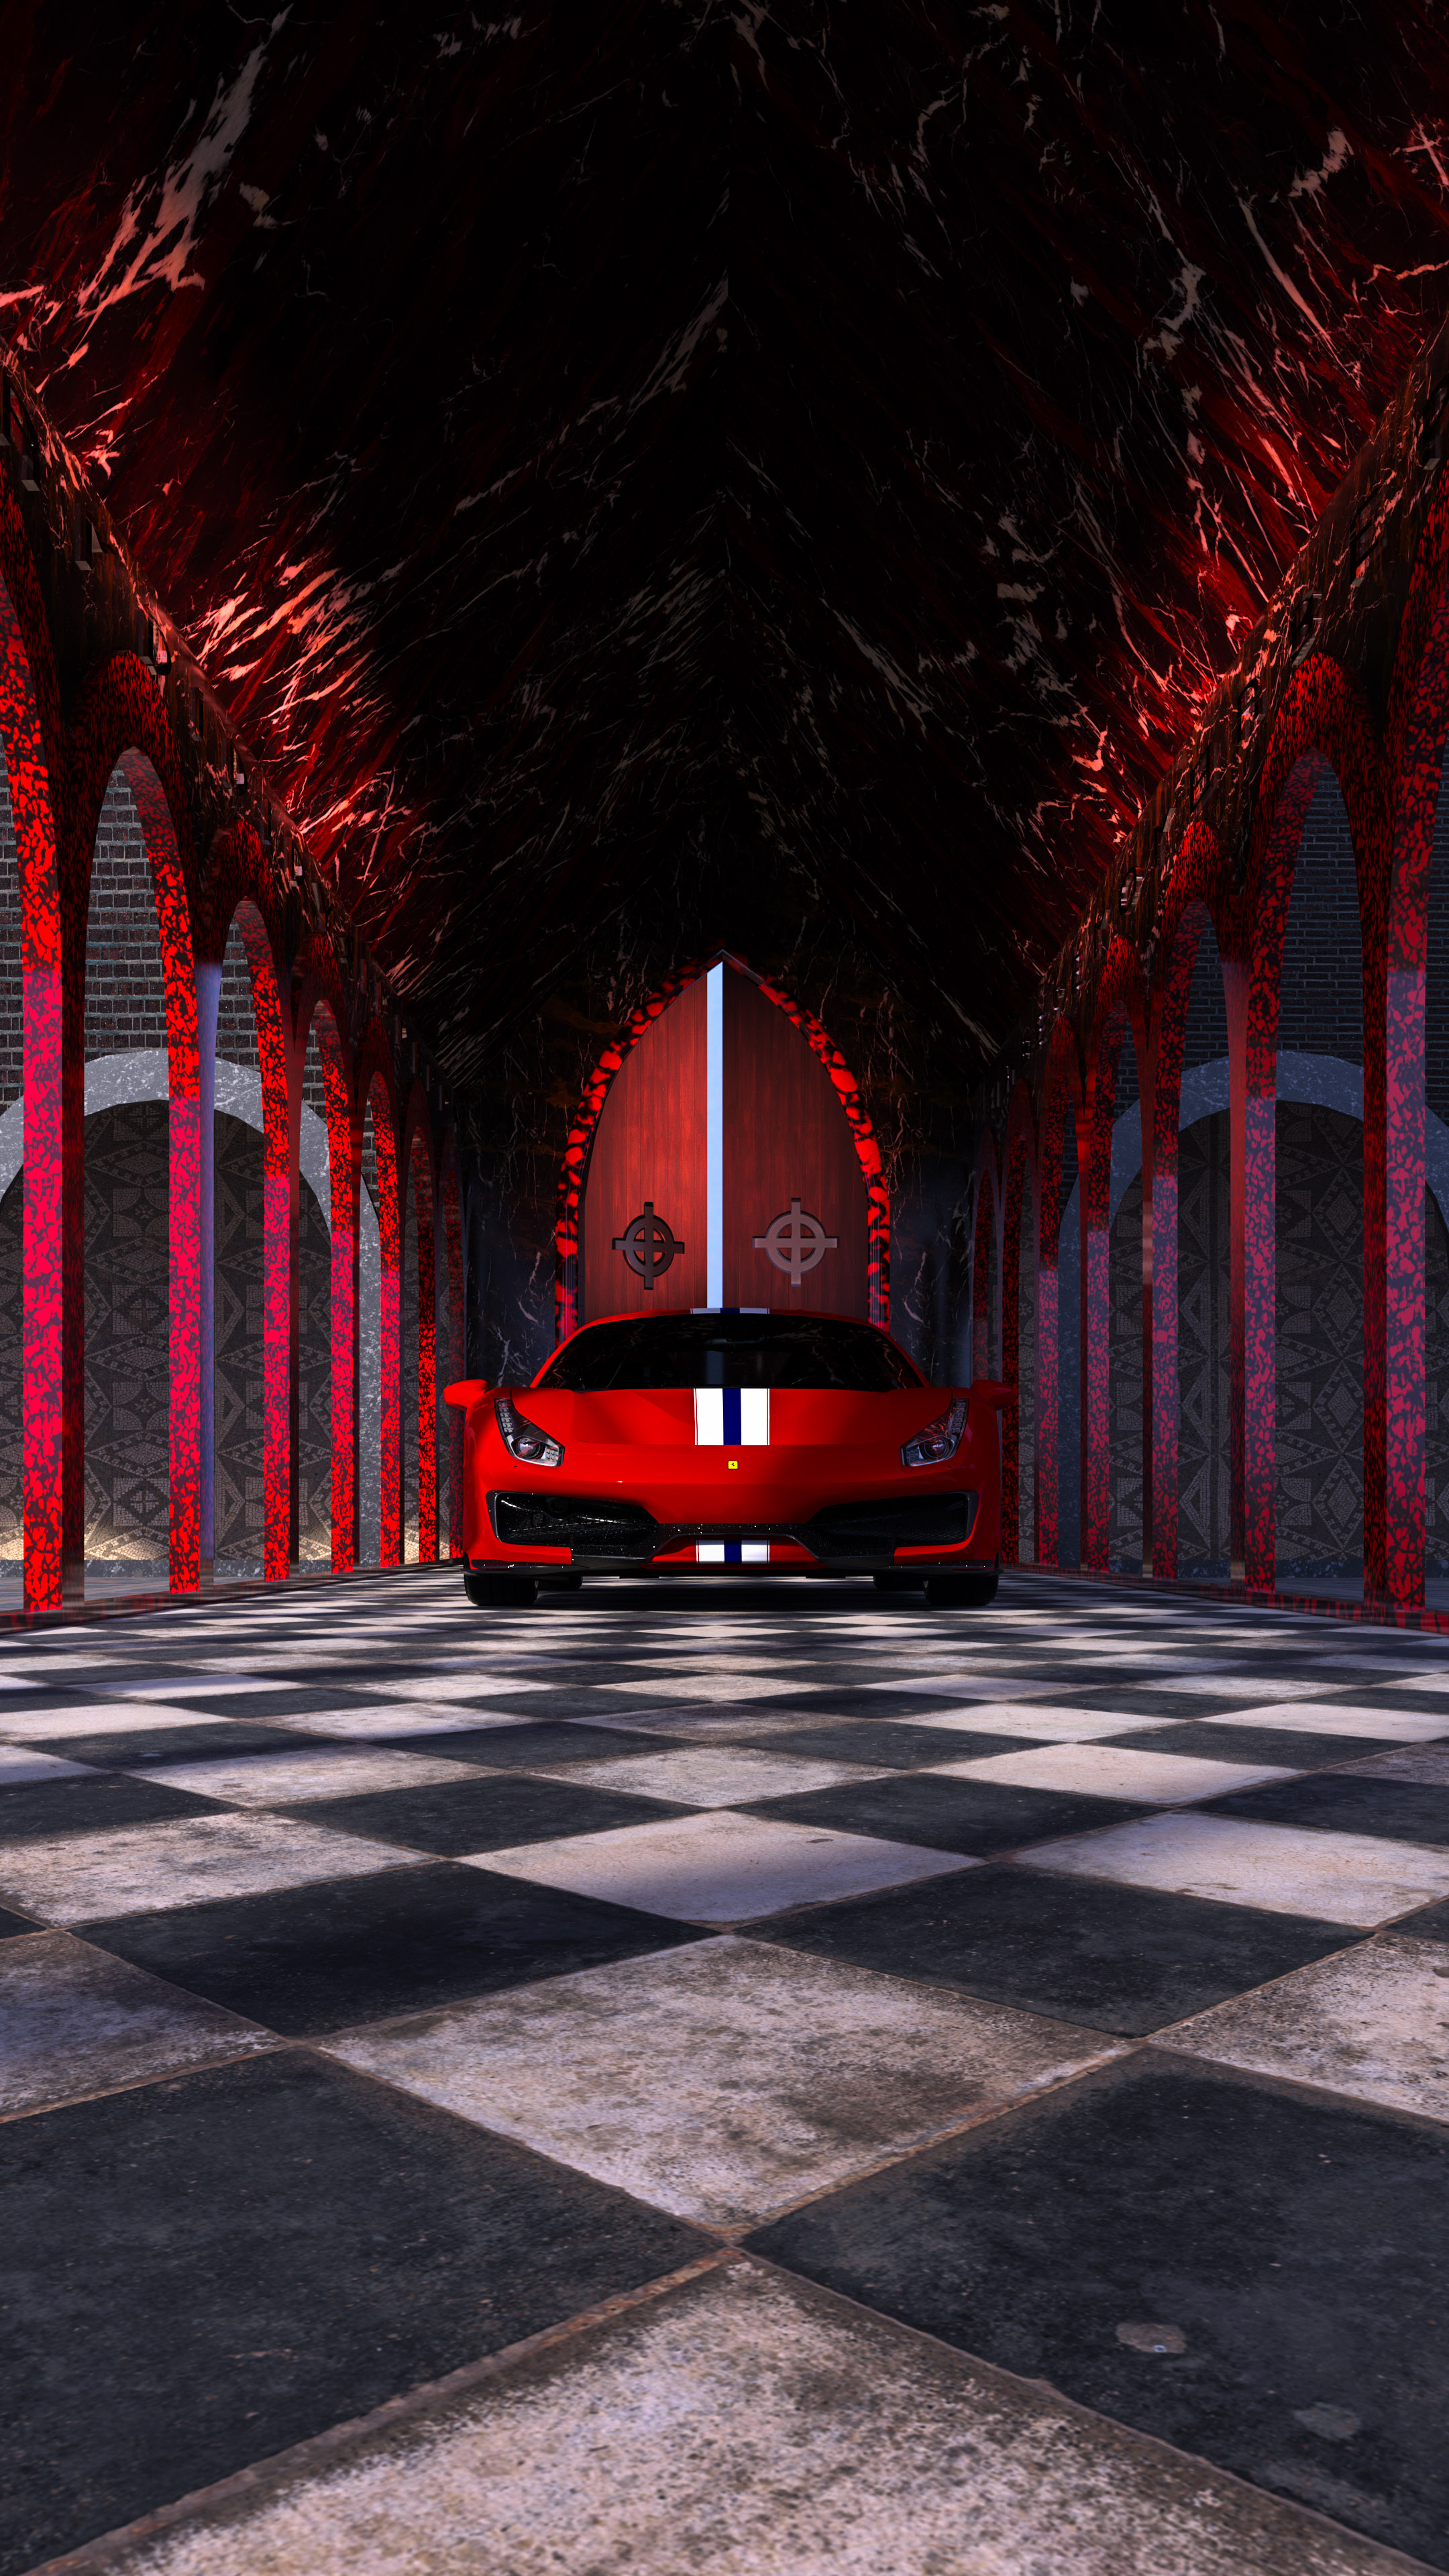 Ressentez la vitesse et la puissance d'une Ferrari 488 avec notre arrière-plan pour iPhone sur le thème de la voiture rouge, conçu pour dynamiser l'esthétique de votre appareil.